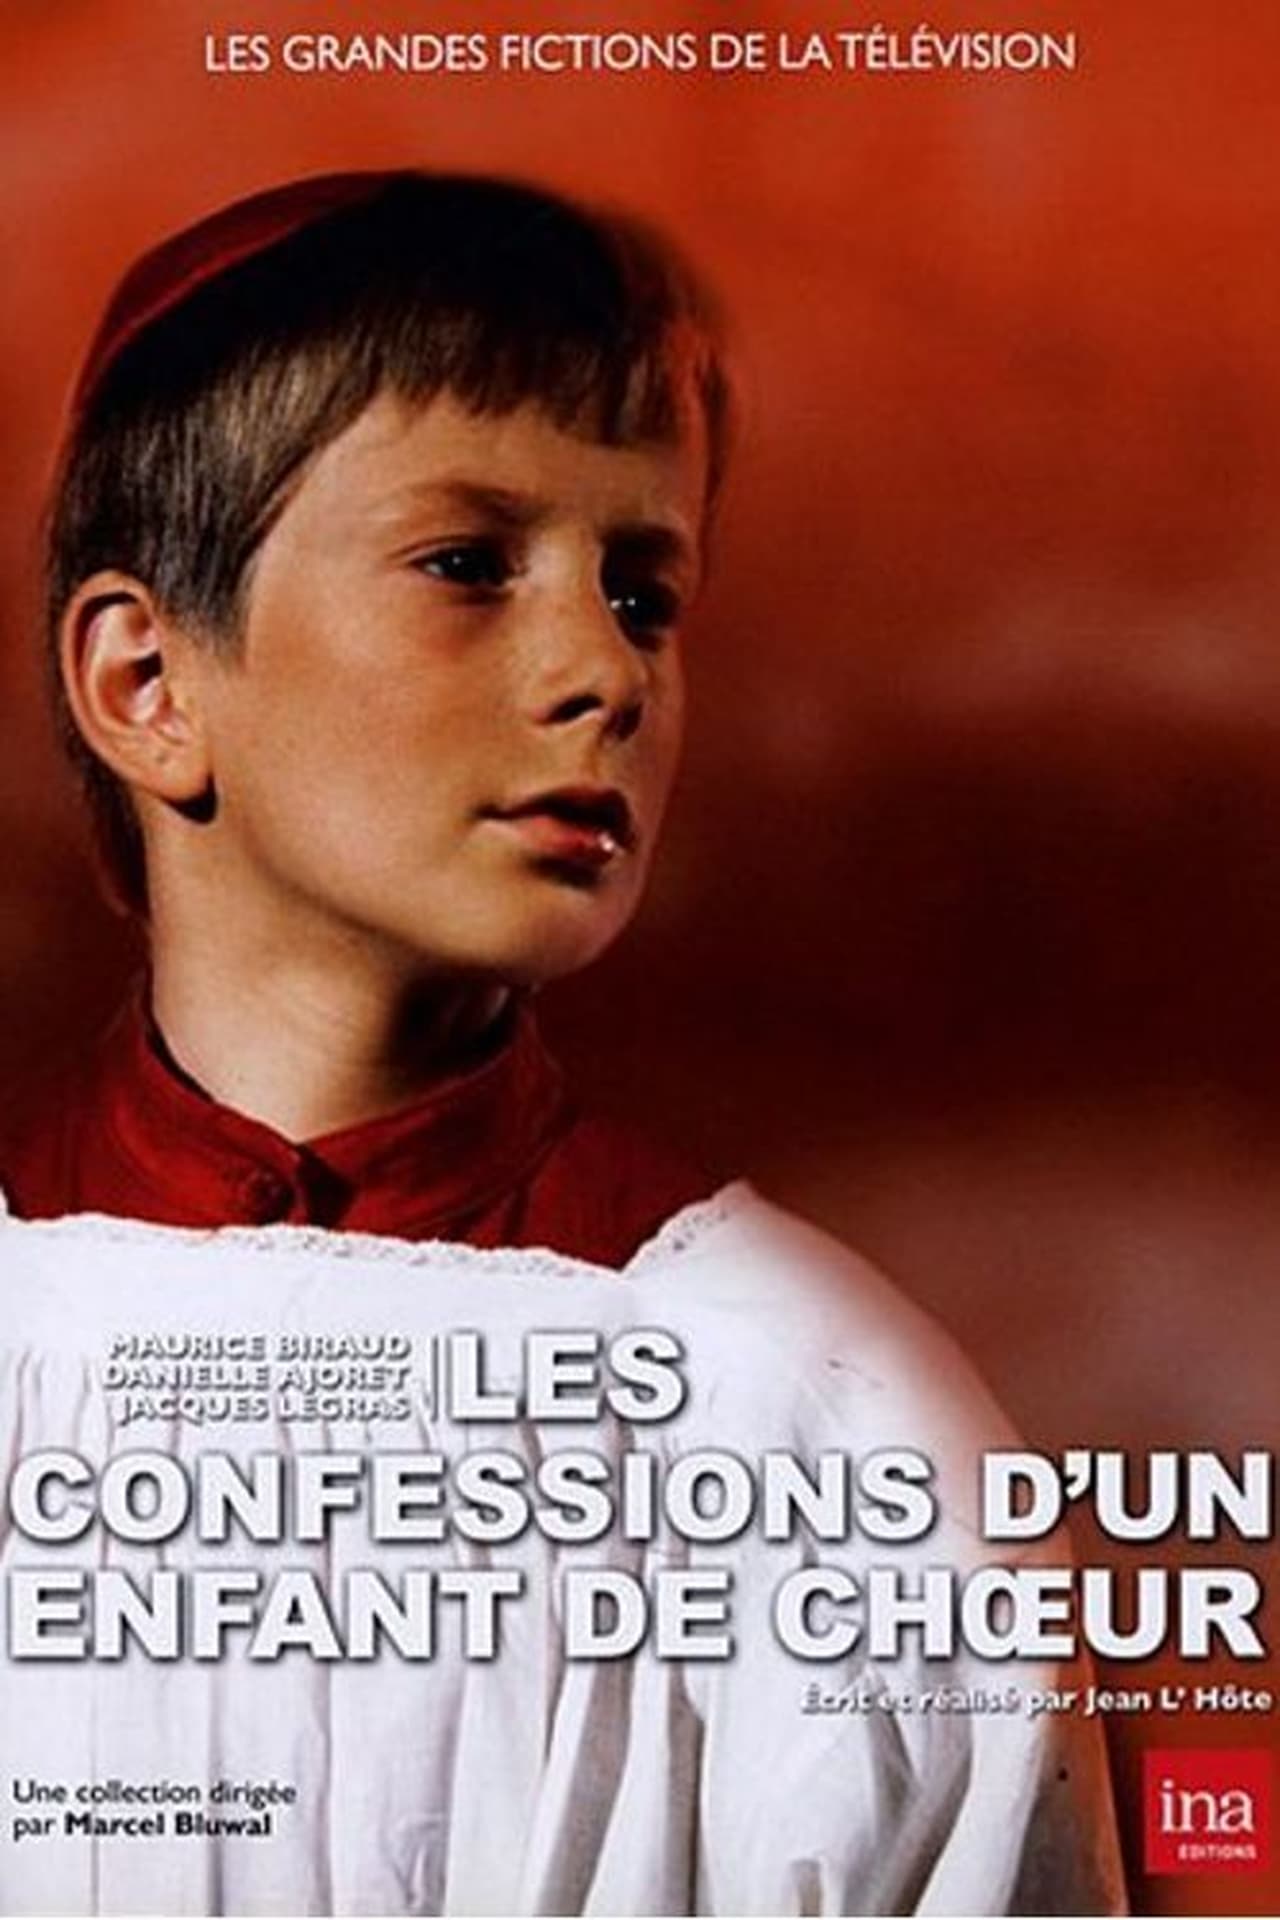 Confessions d'un enfant de choeur (1977) with English Subtitles on DVD on DVD